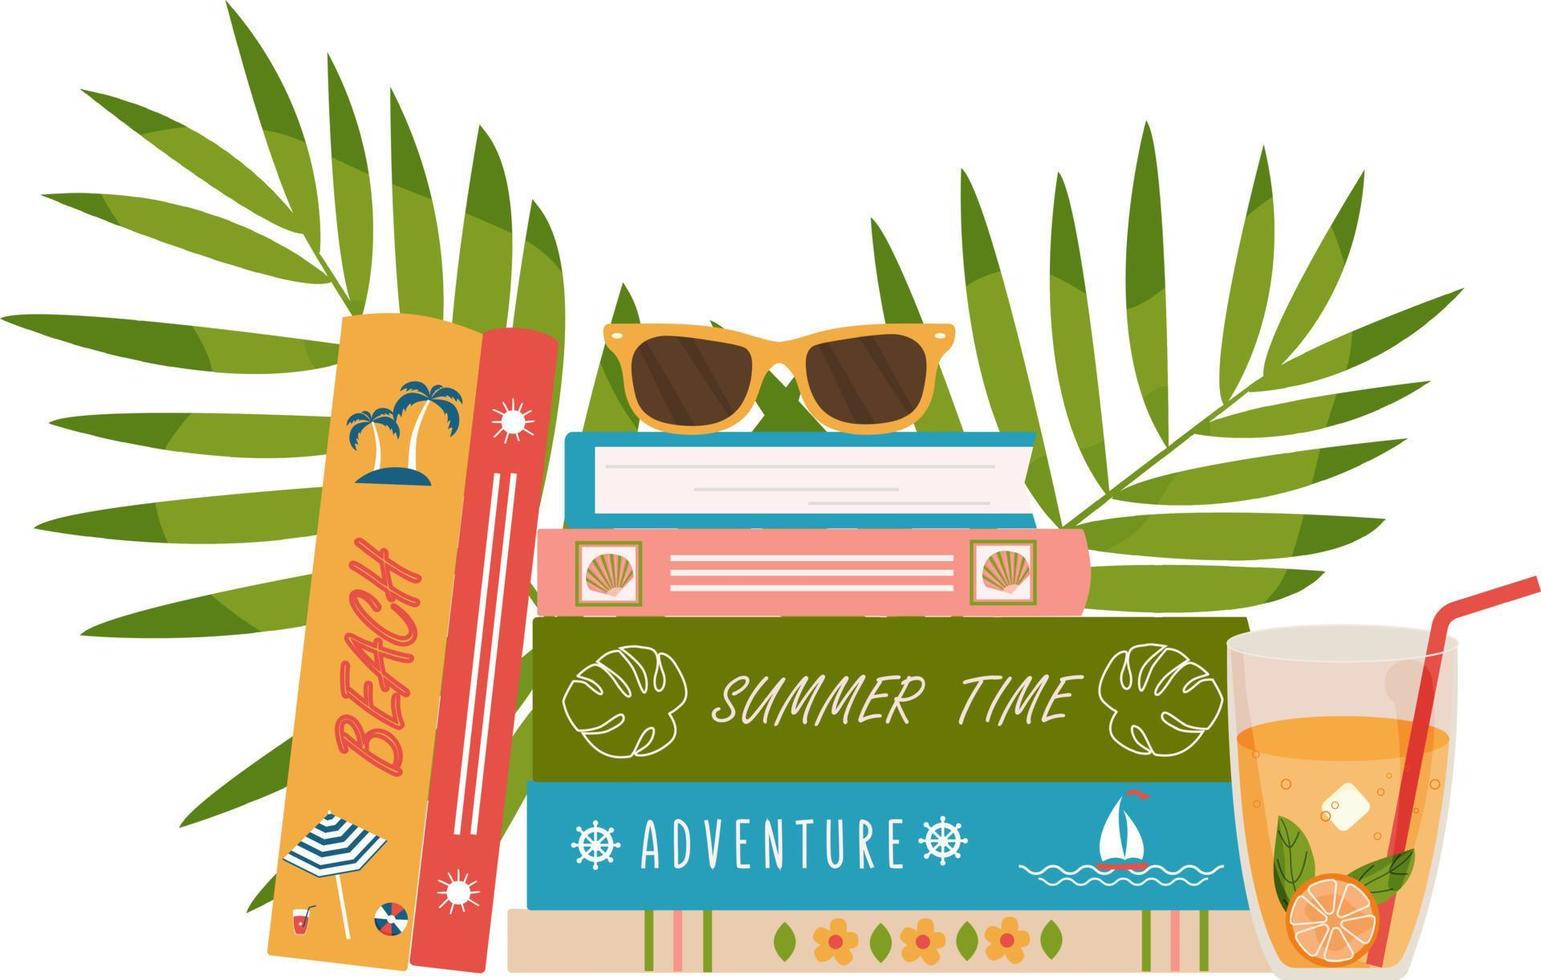 stapel boek met tropische bladeren en cocktail. zomer boeken. zomer lezen. boeken over zomertijd, avontuur, ontspannen. vectorillustratie in vlakke stijl voor winkel, winkels, bibliotheken. vector